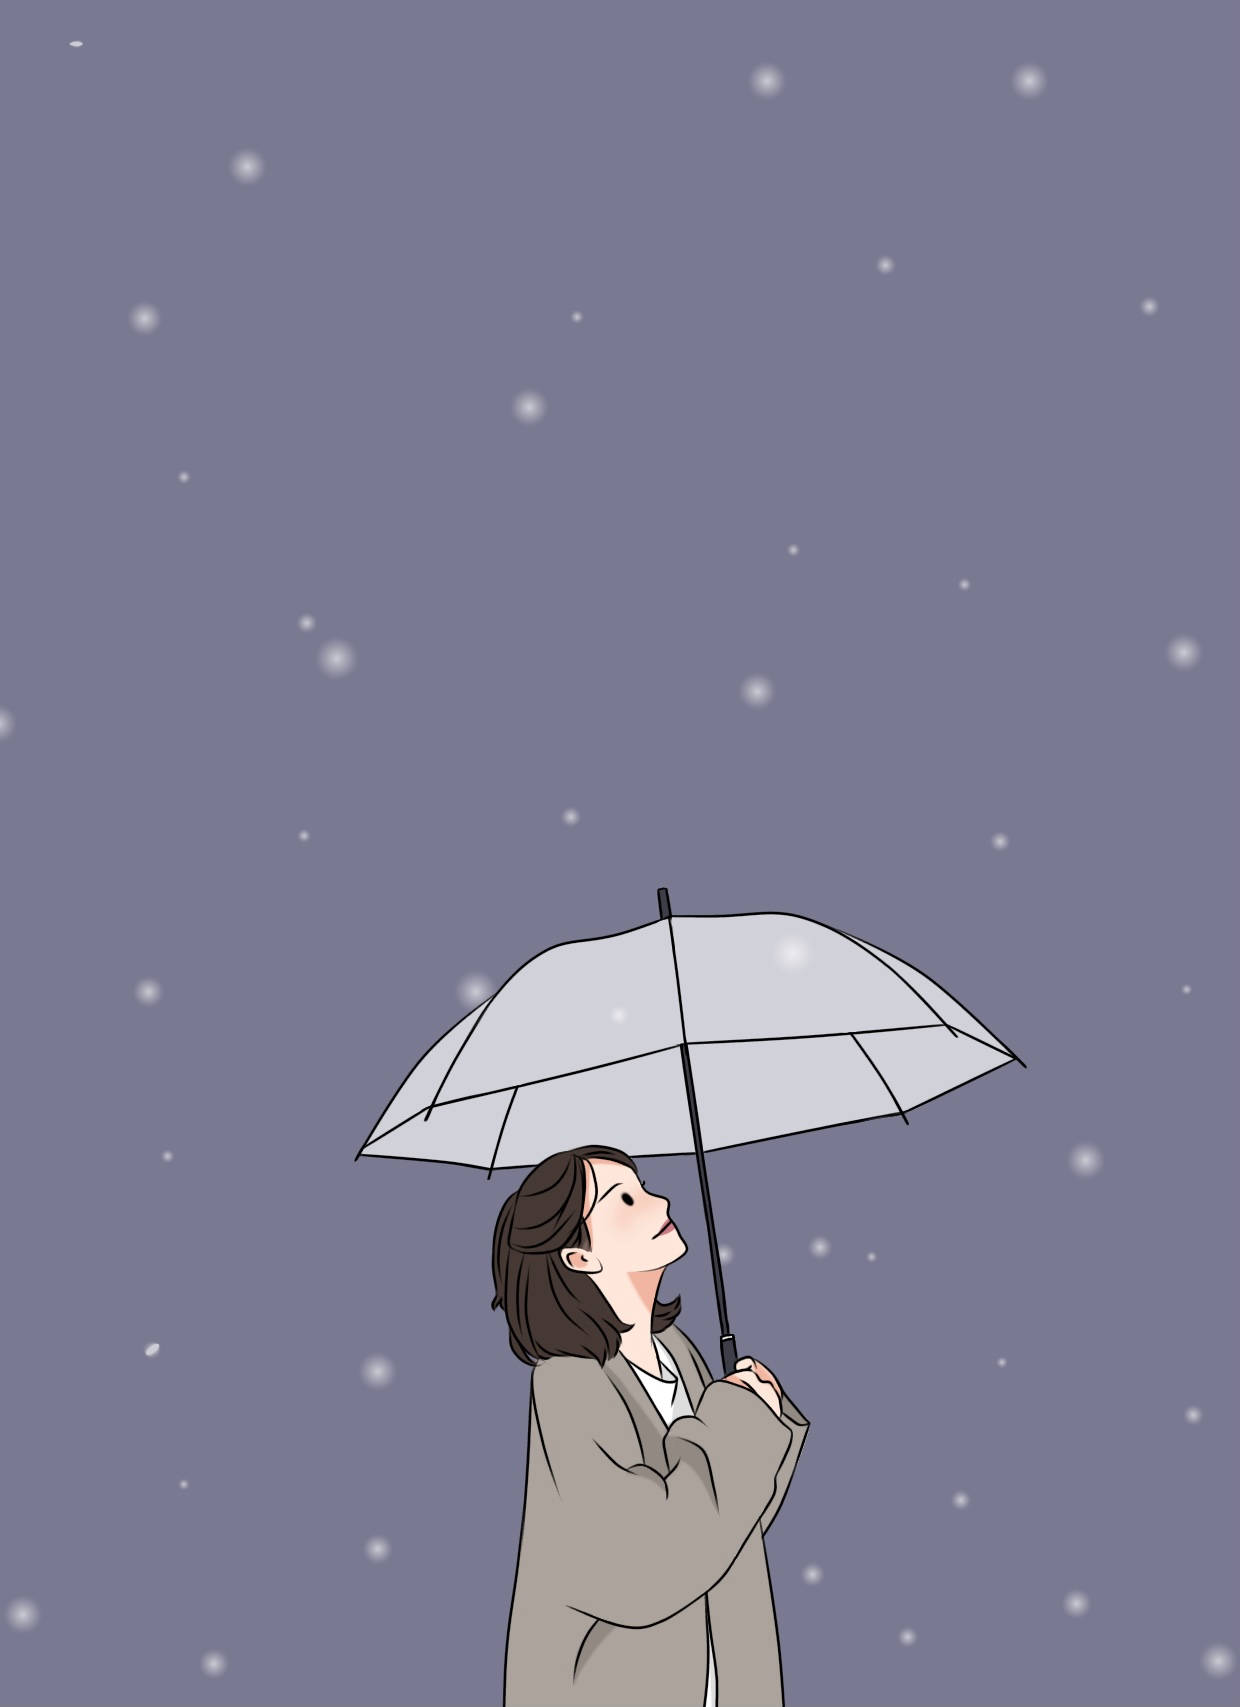 Aesthetic Girl With Umbrella